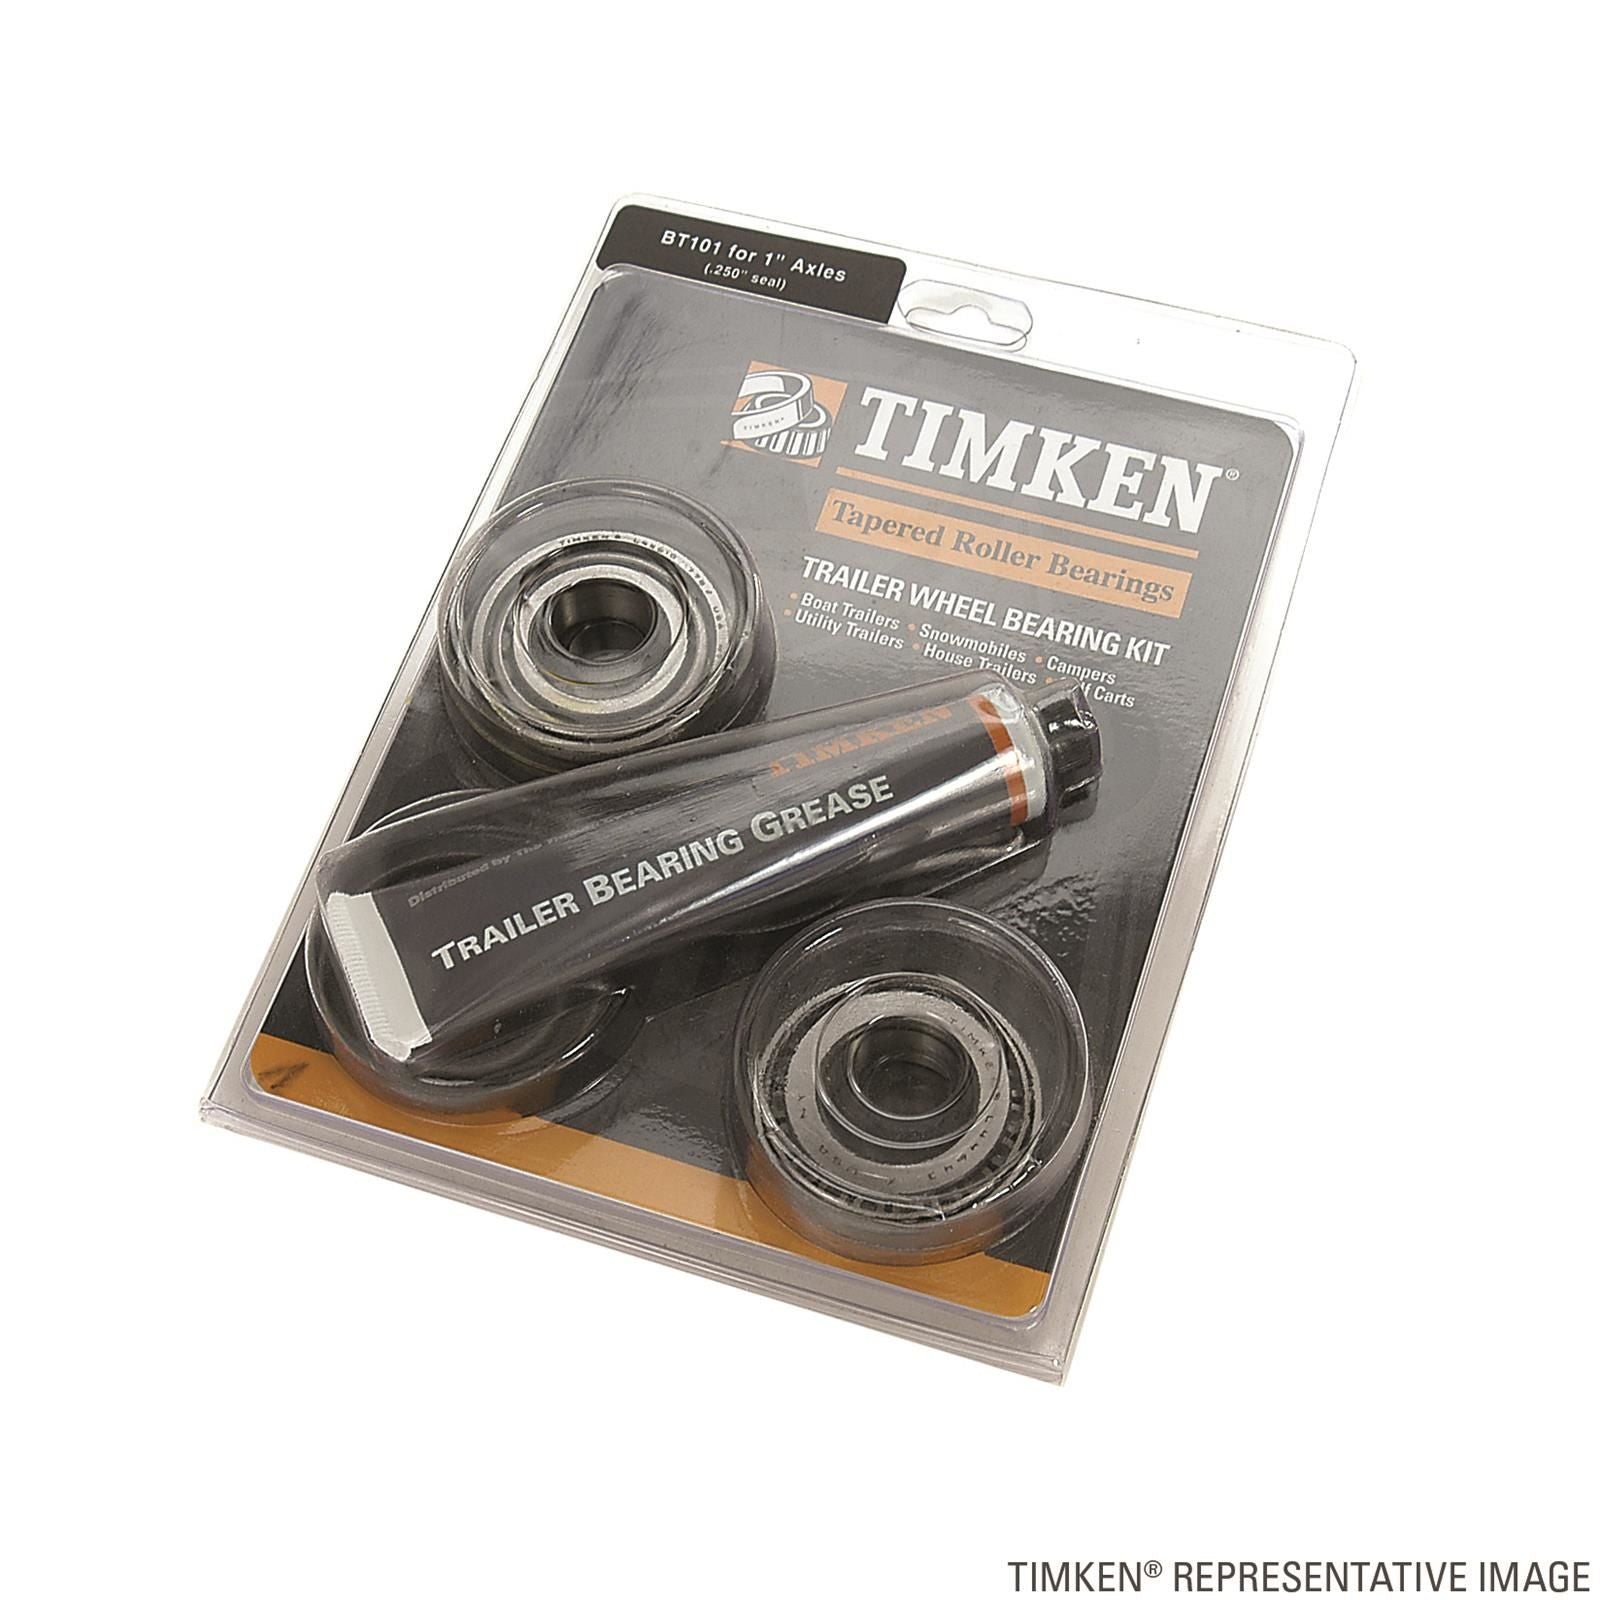 Timken BT216 - Trailer Wheel Bearing Kit 17.07" x 11.71" x 5.59"